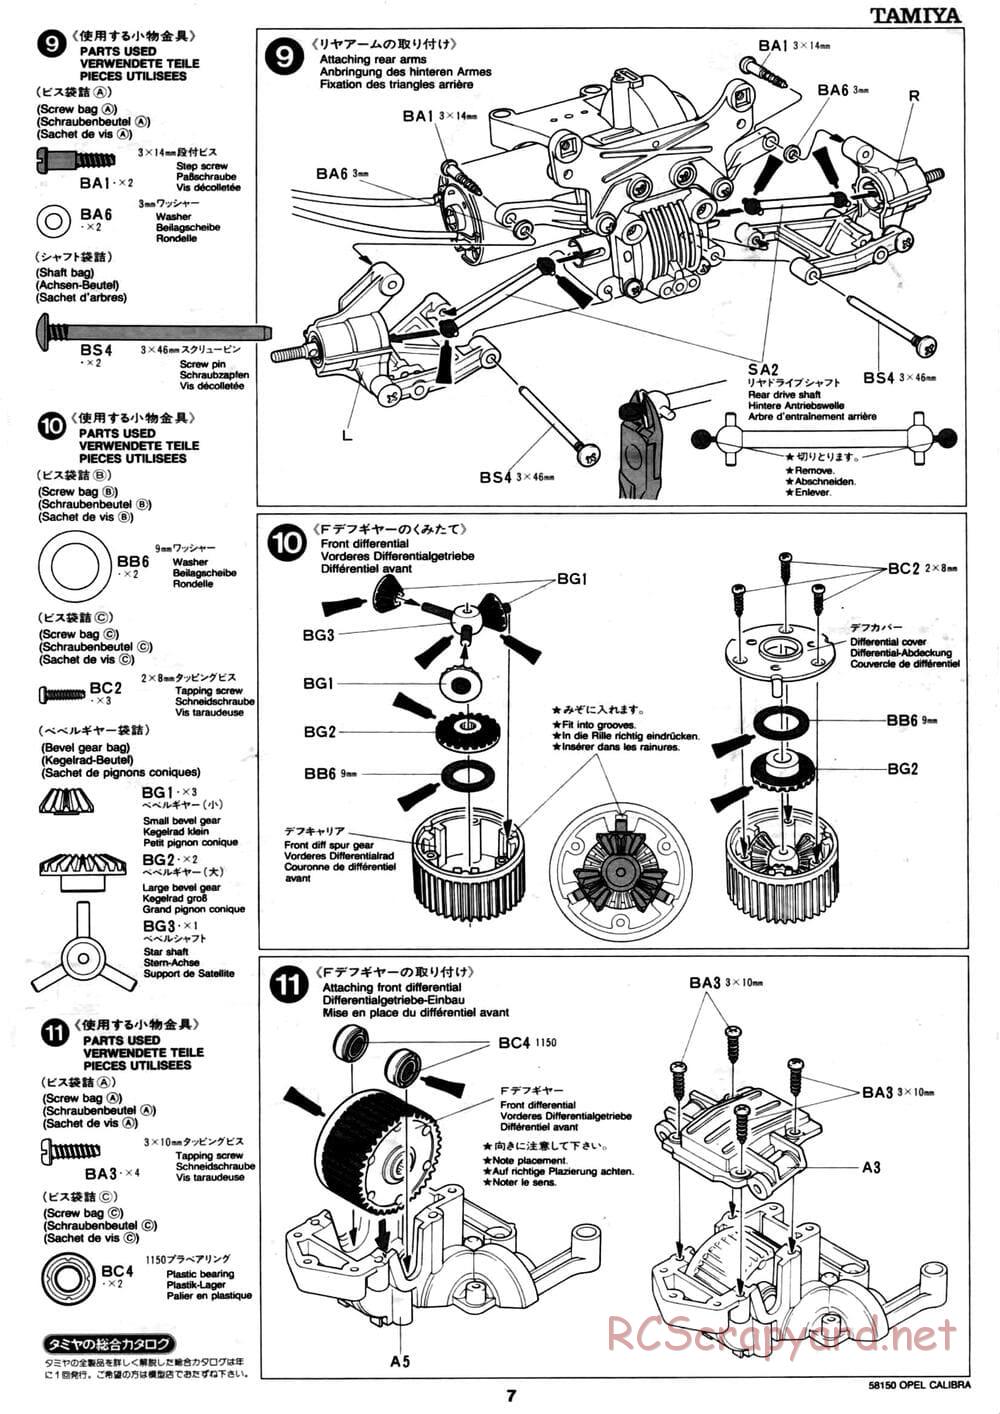 Tamiya - Opel Calibra V6 DTM - TA-02 Chassis - Manual - Page 7